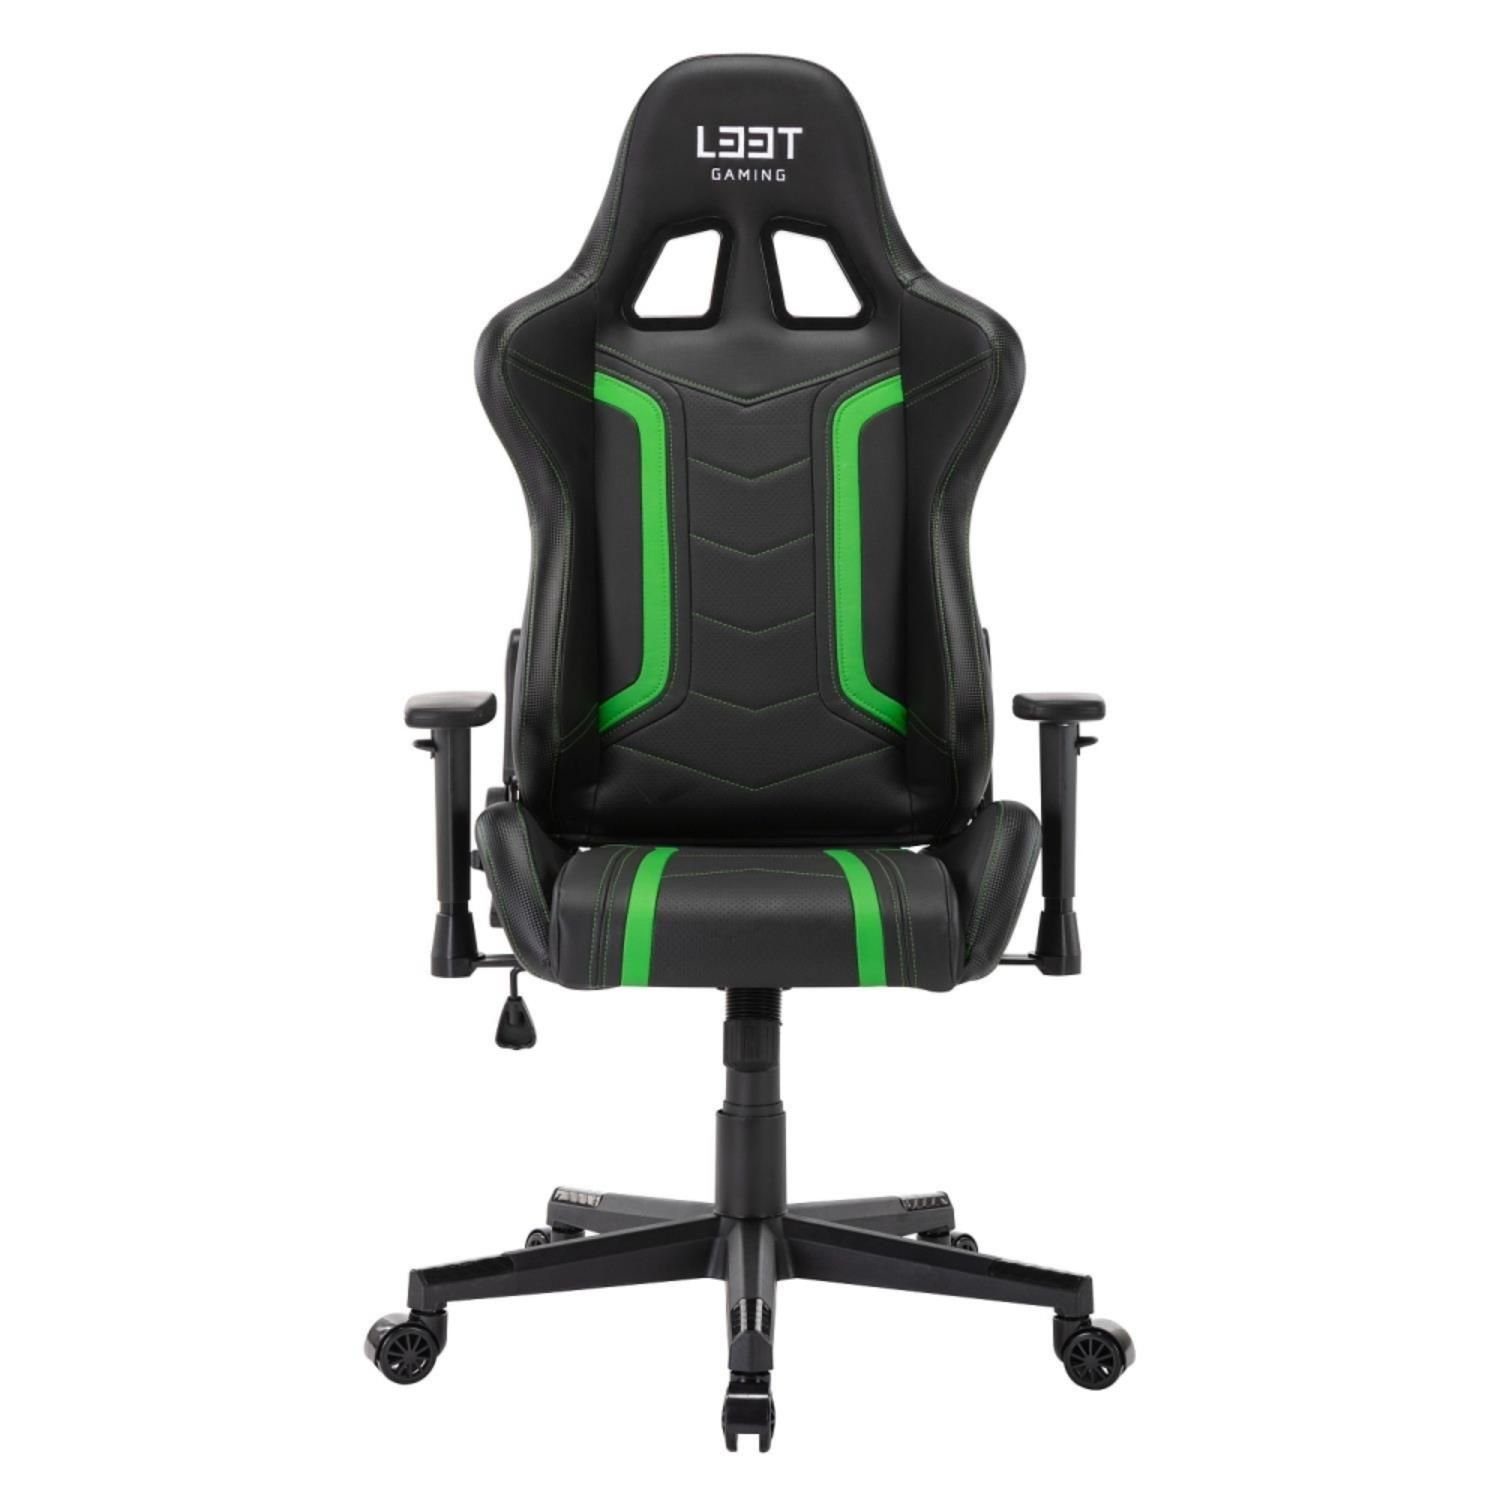 L33T Gaming-Stuhl ENERGY Gamingstuhl Bürostuhl bis 120 kg, neigbar, höhenverstellbar, belastbar bis 120 kg grün/schwarz